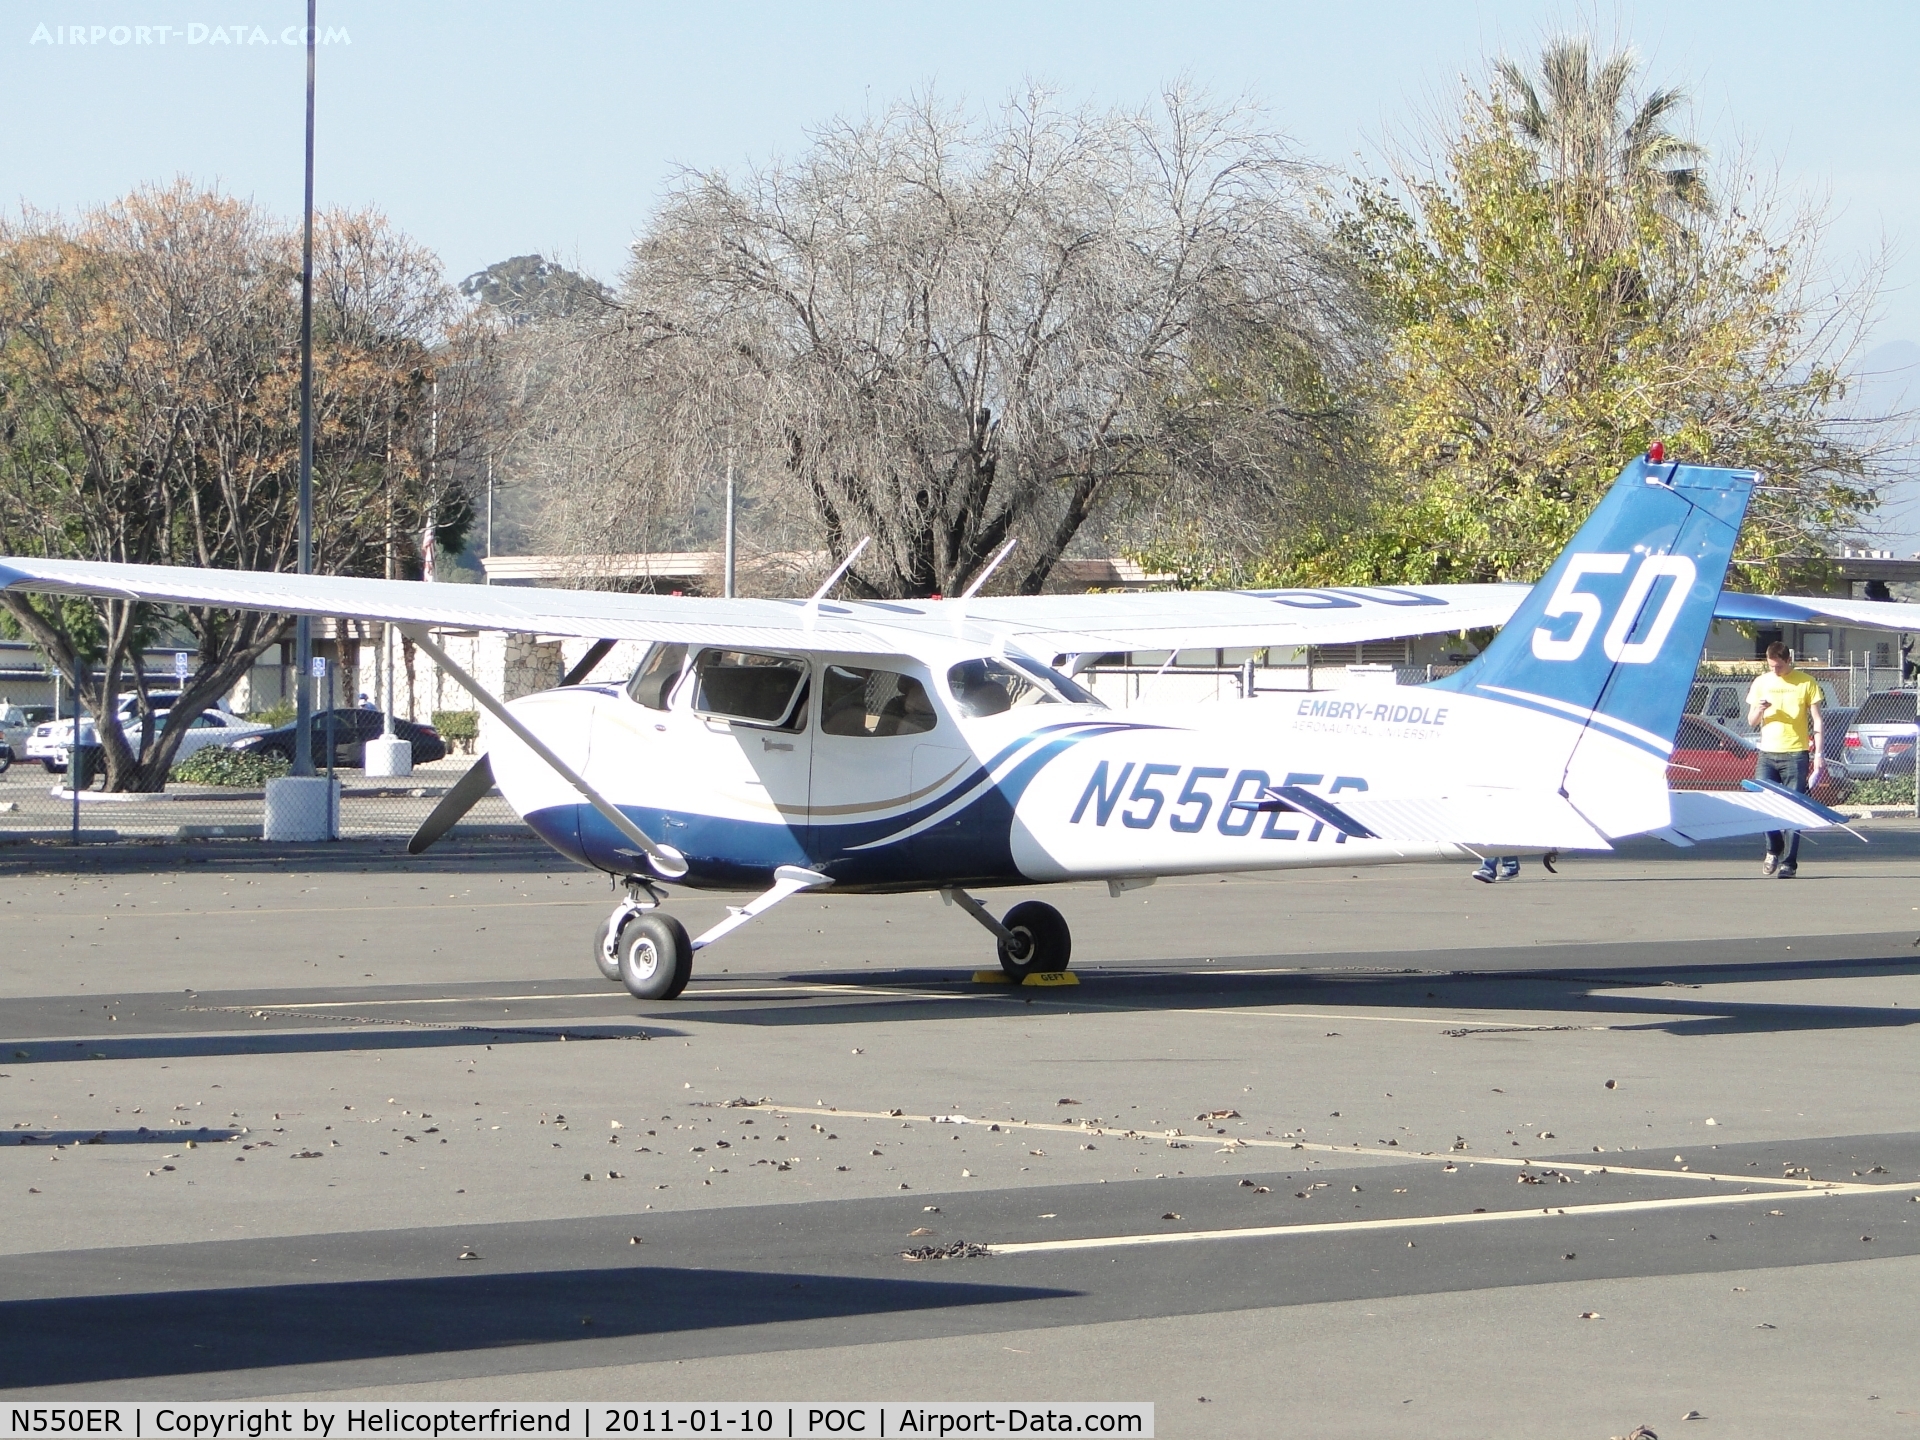 N550ER, 2007 Cessna 172S C/N 172S10531, Parked in transient parking